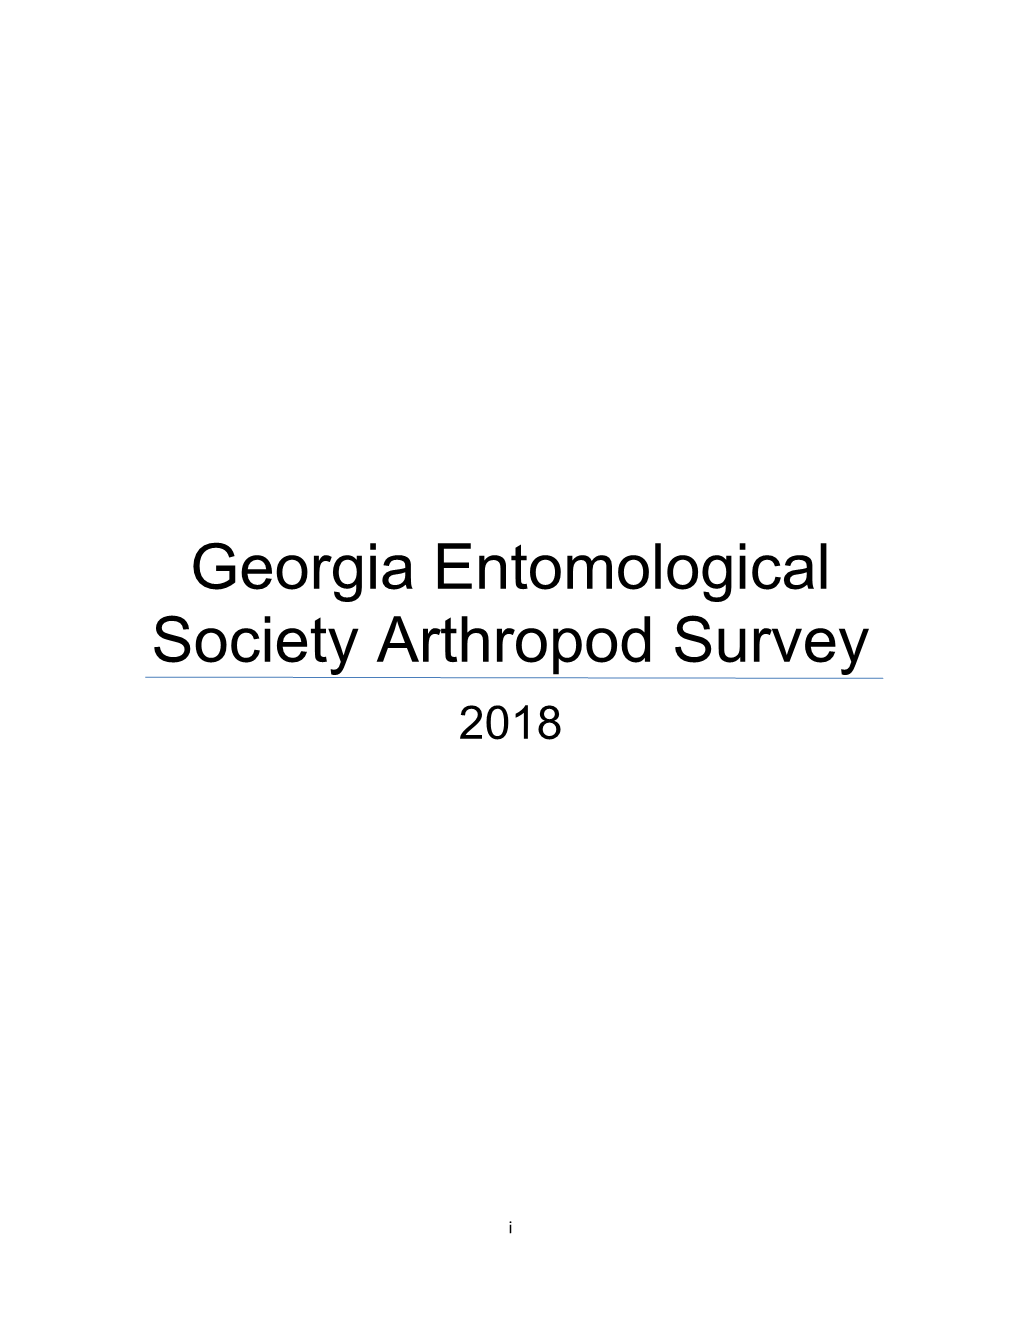 Georgia Entomological Society Arthropod Survey 2018